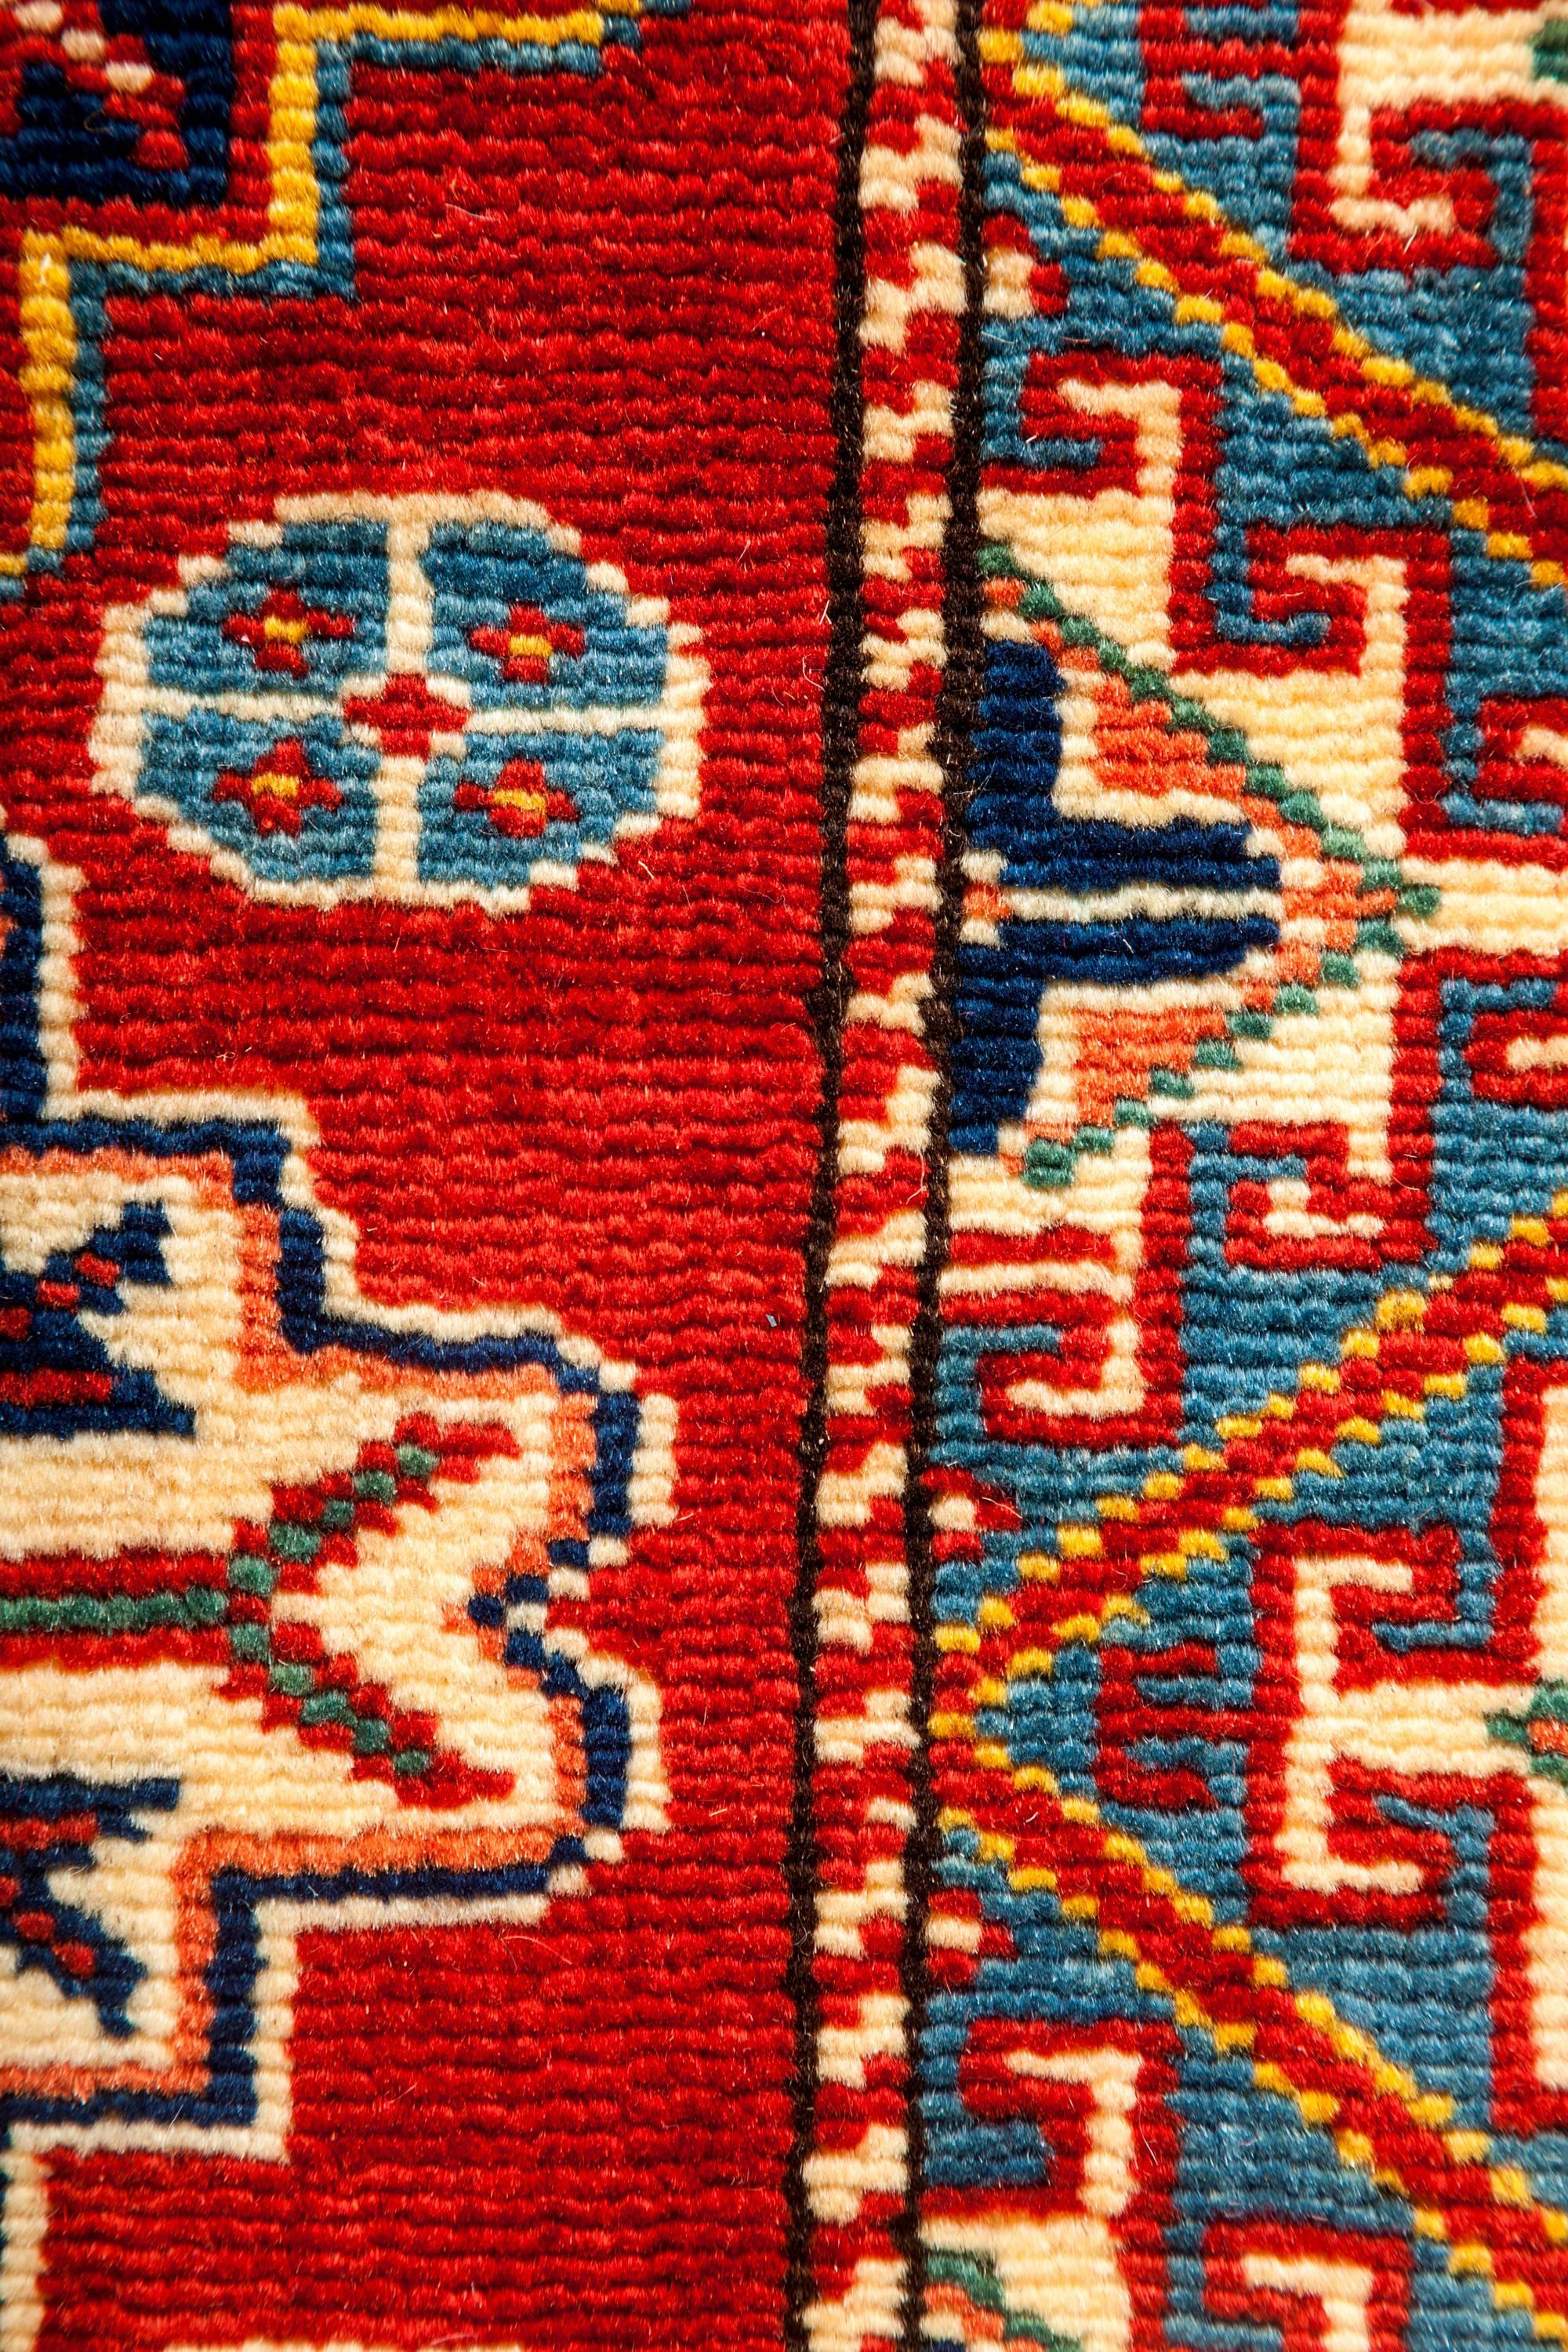 Kazak One-of-a-Kind Southwestern Wool Hand-Knotted Area Rug, Carnelian, 5' 1 x 6' 10